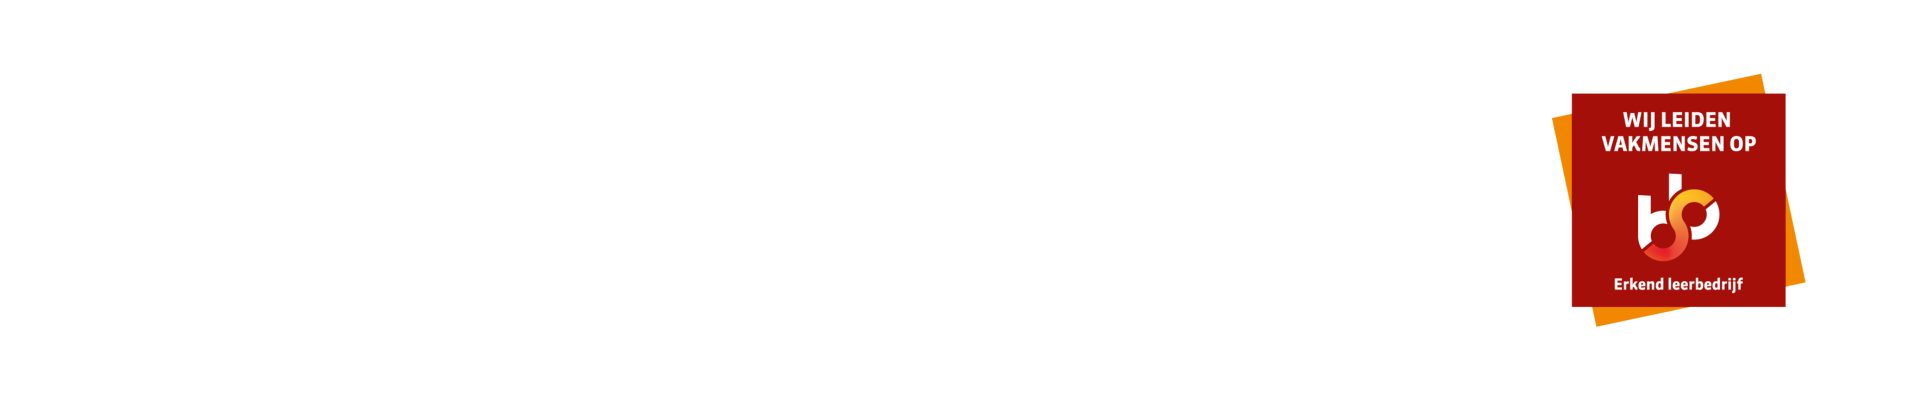 certificate logos websites